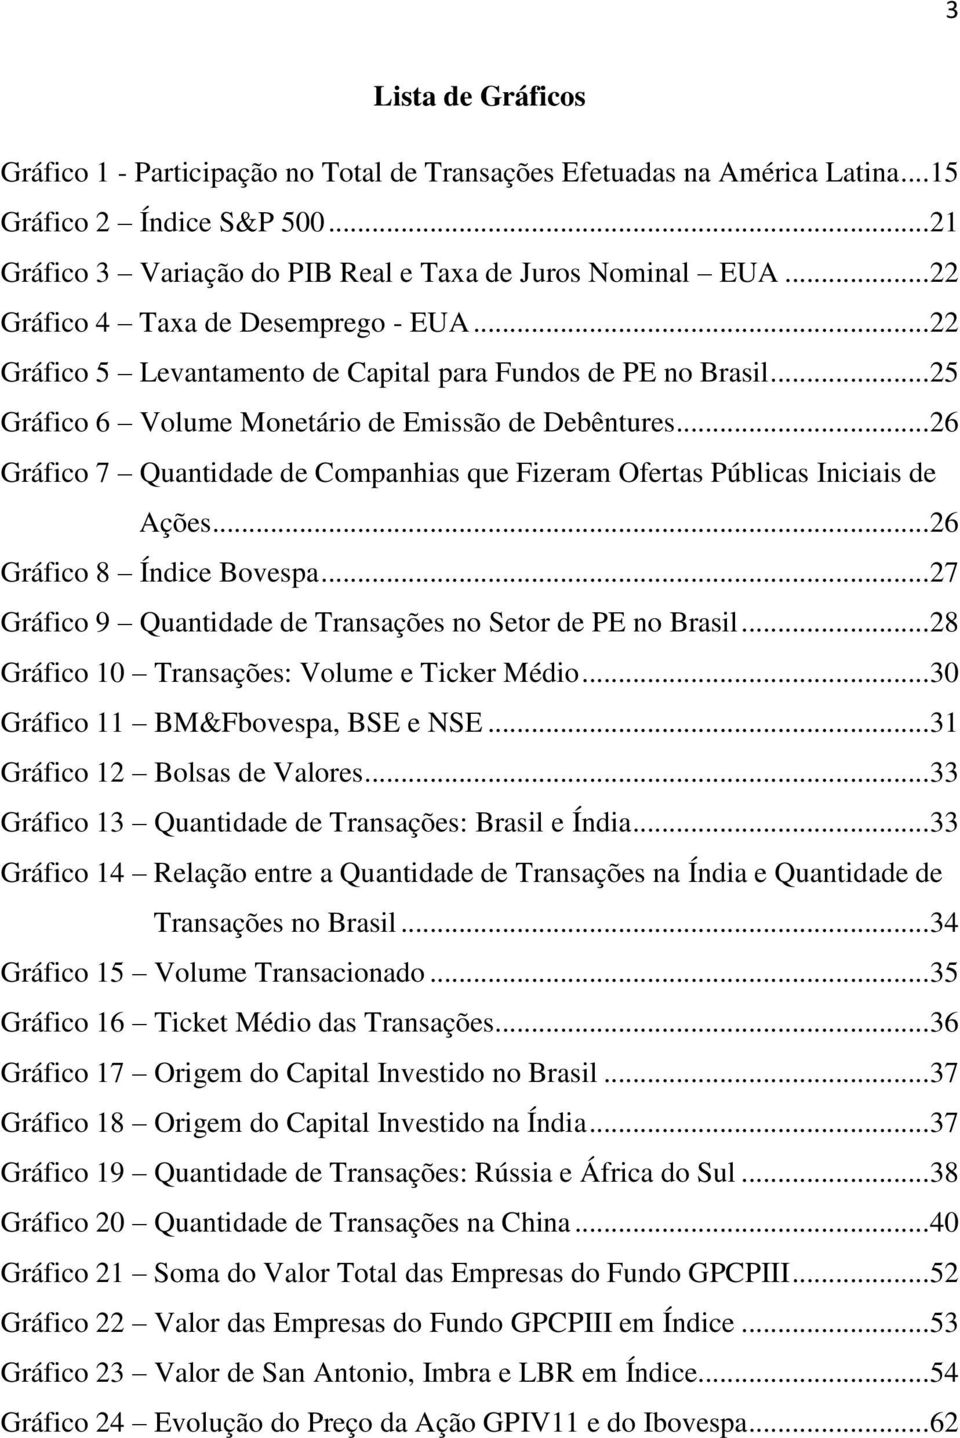 .. 26 Gráfico 7 Quantidade de Companhias que Fizeram Ofertas Públicas Iniciais de Ações... 26 Gráfico 8 Índice Bovespa... 27 Gráfico 9 Quantidade de Transações no Setor de PE no Brasil.